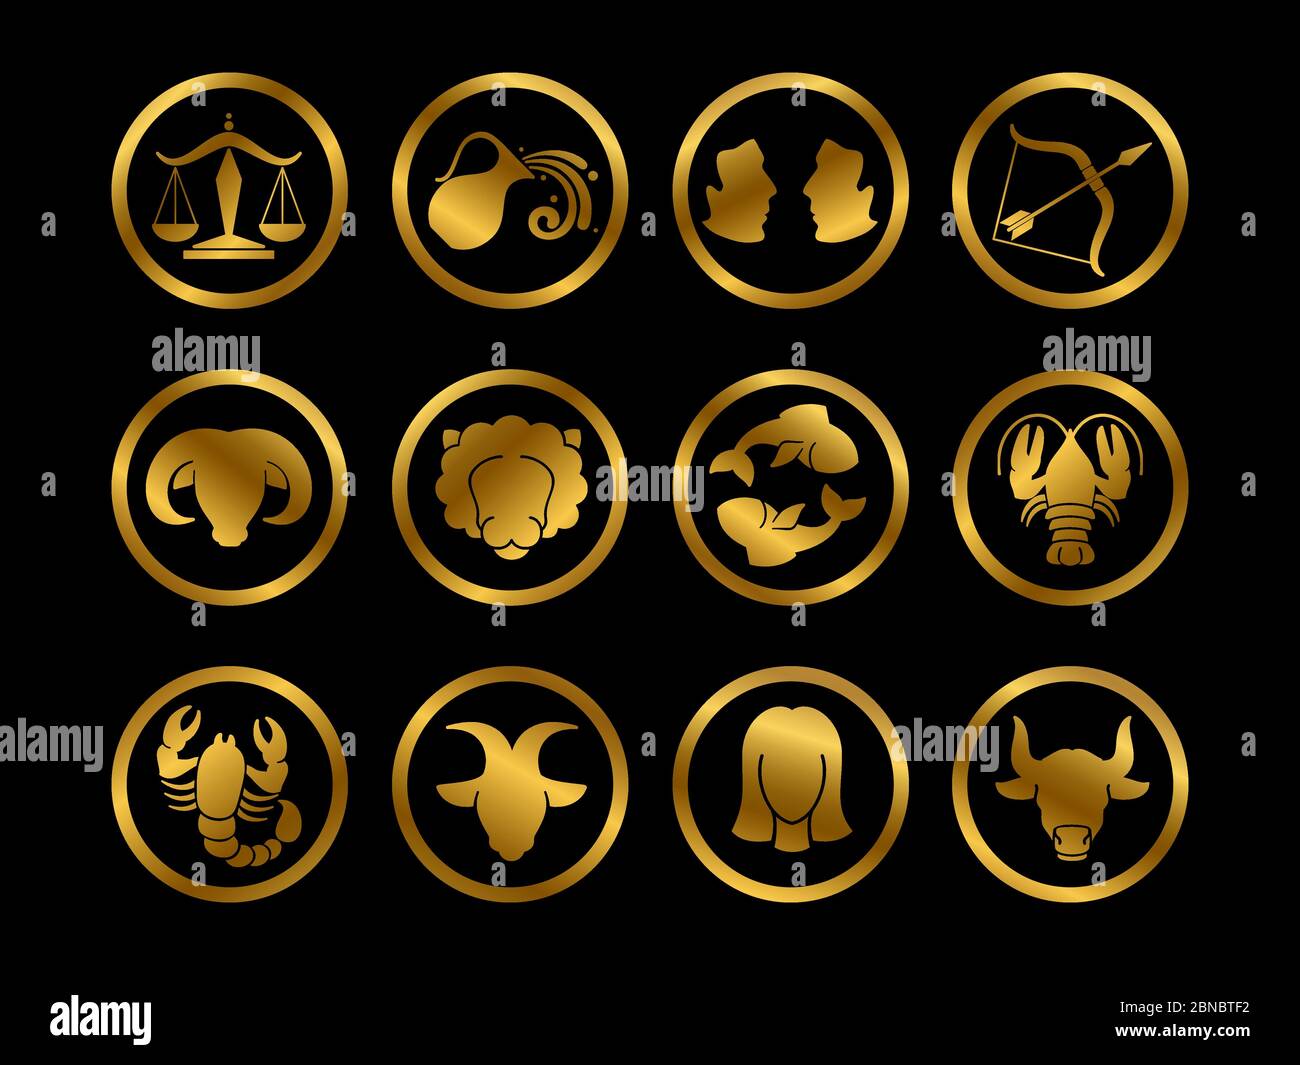 Goldenes Horoskop Tierkreis Vektorzeichen. Astrologie Symbole auf schwarzem Hintergrund Illustration isoliert gesetzt Stock Vektor